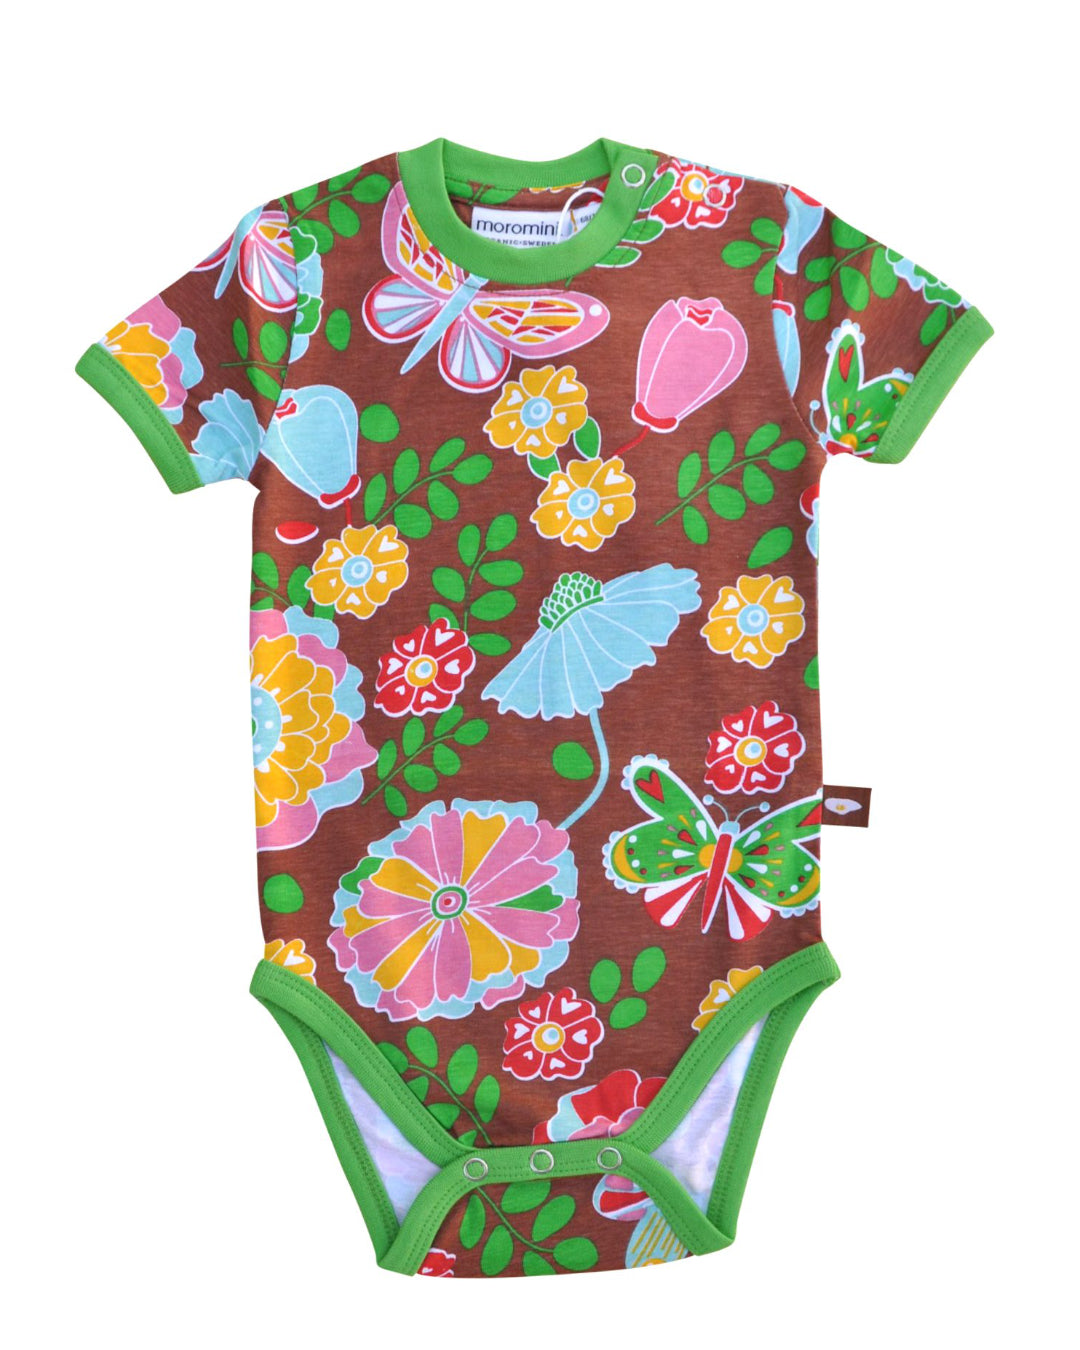 Brauner Babybody aus Biobaumwolle mit bunten Blumen und grünem Kragen und Arm und Beinabschlüssen von moromini